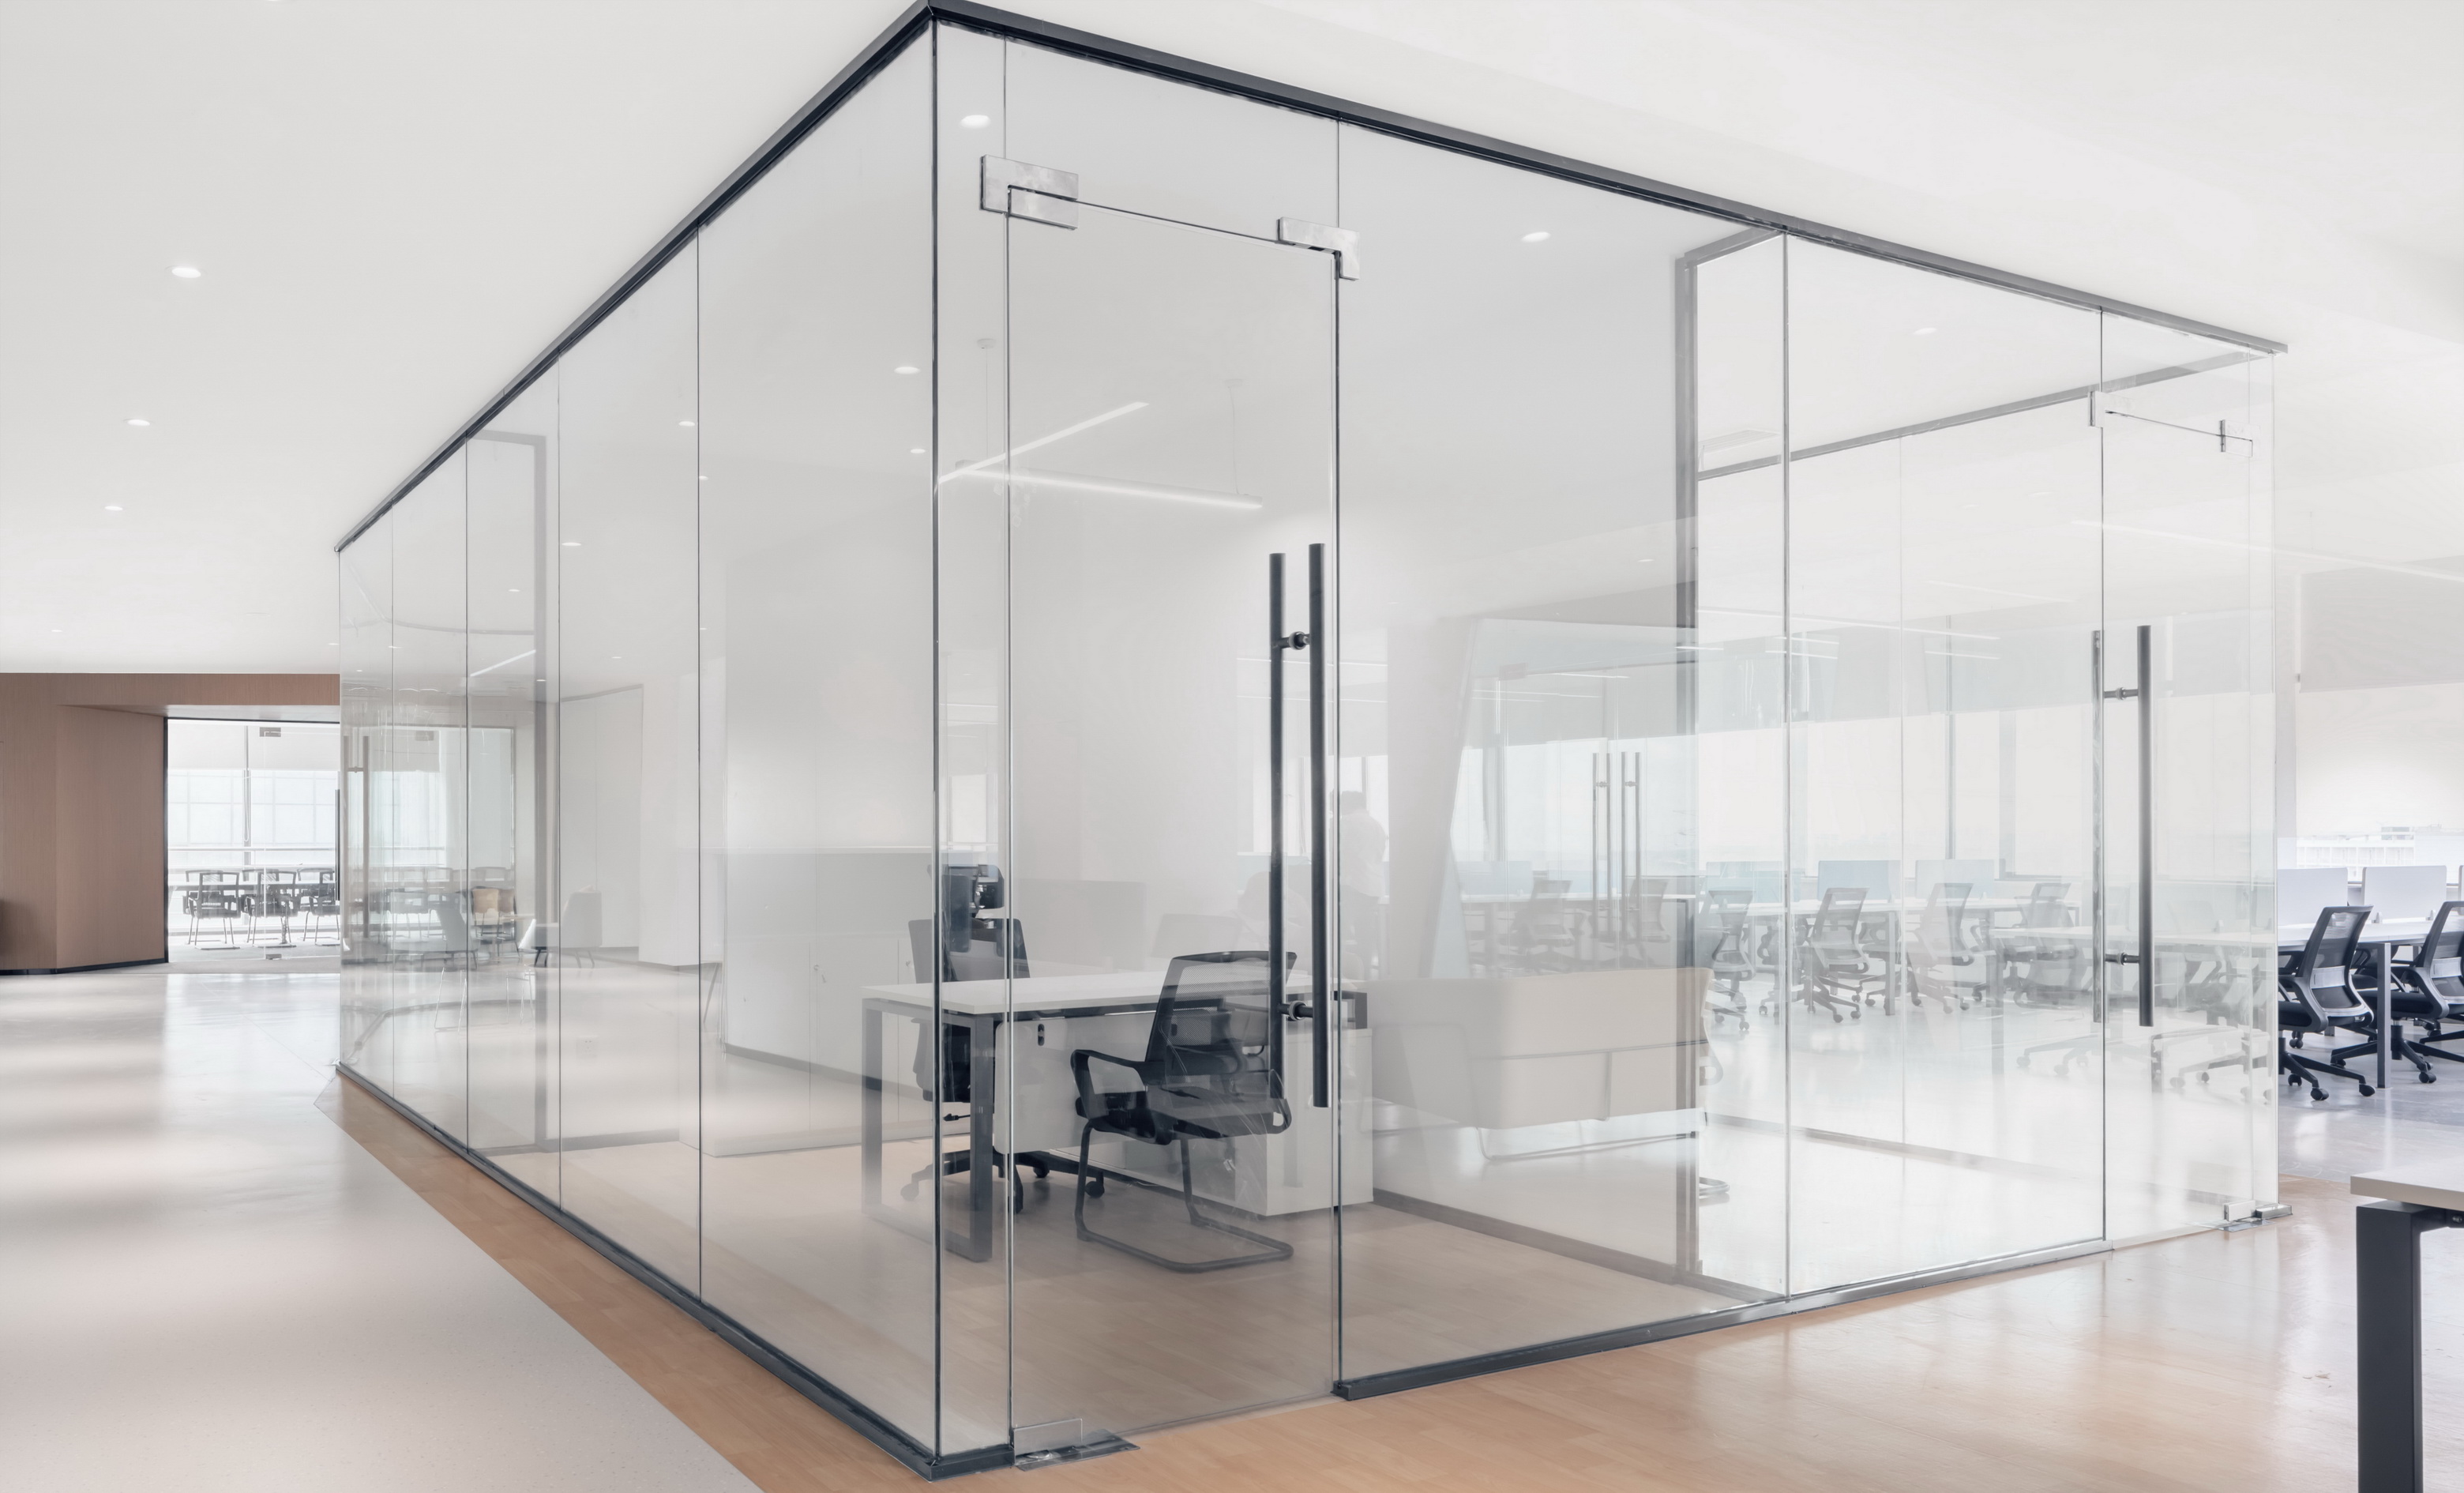 大面积玻璃代替厚重墙体，轻薄的线条边框隐匿其中，会议室的物理分区体量被减至最小。“透明盒子”的结构被光线打通，一个高端质感迭代空间内，空间与工作发生紧密而富有无尽创造力的未来。